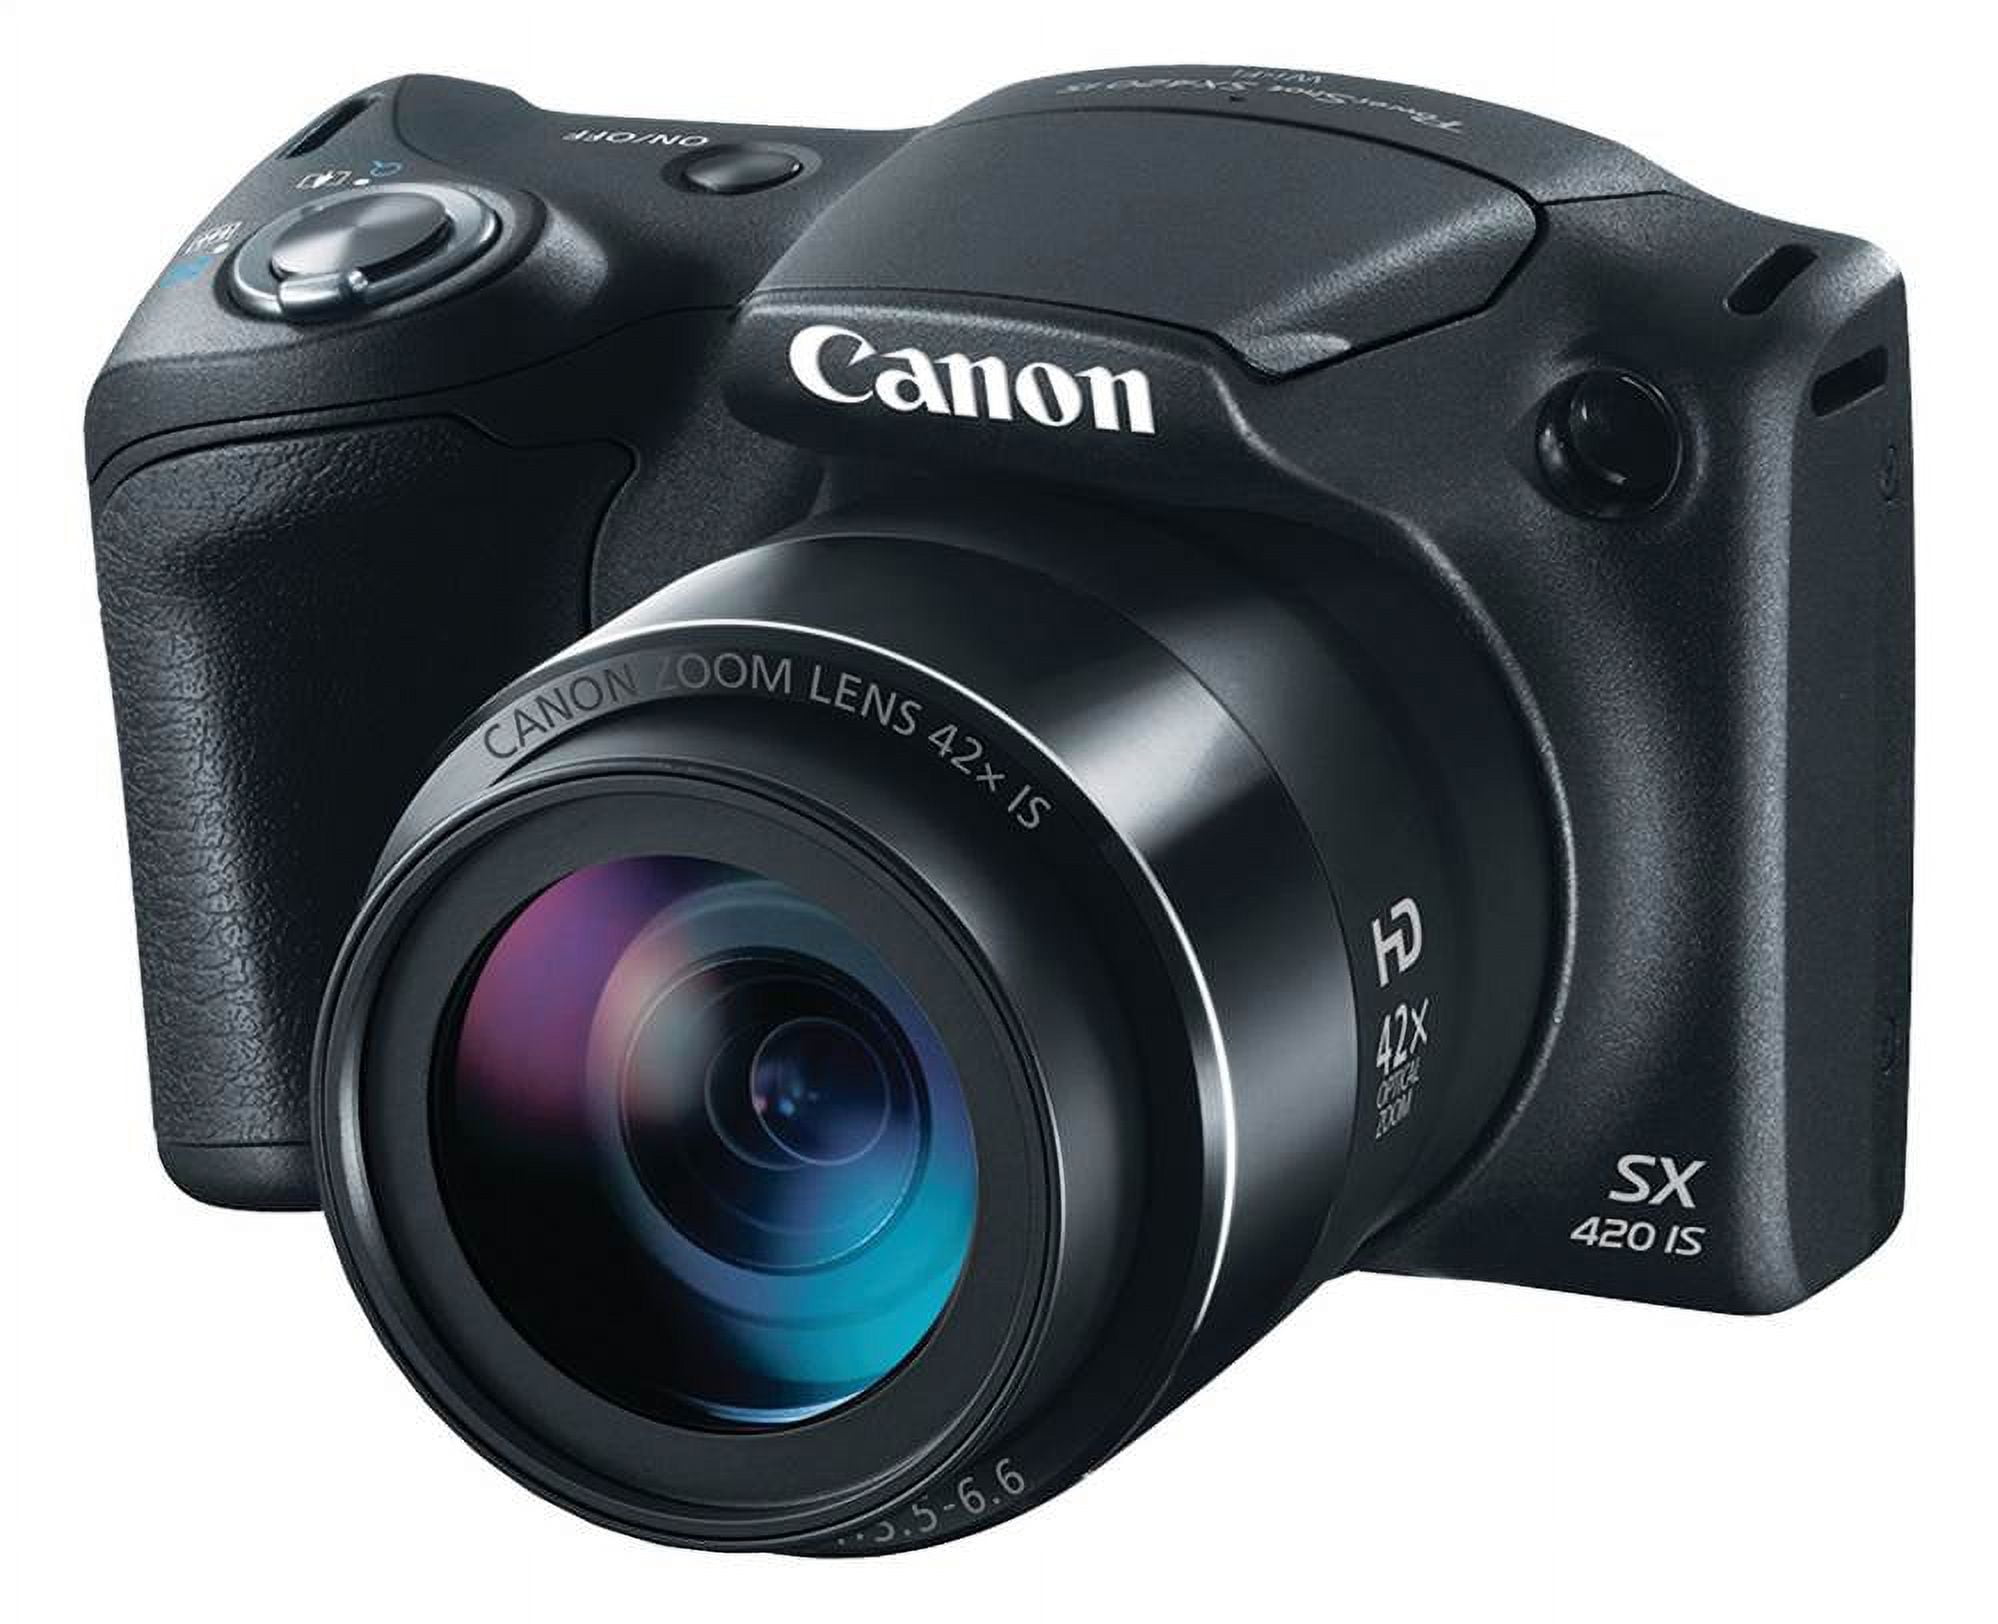 20.0-Megapixel PowerShot SX420 IS Digital Camera in Black ...